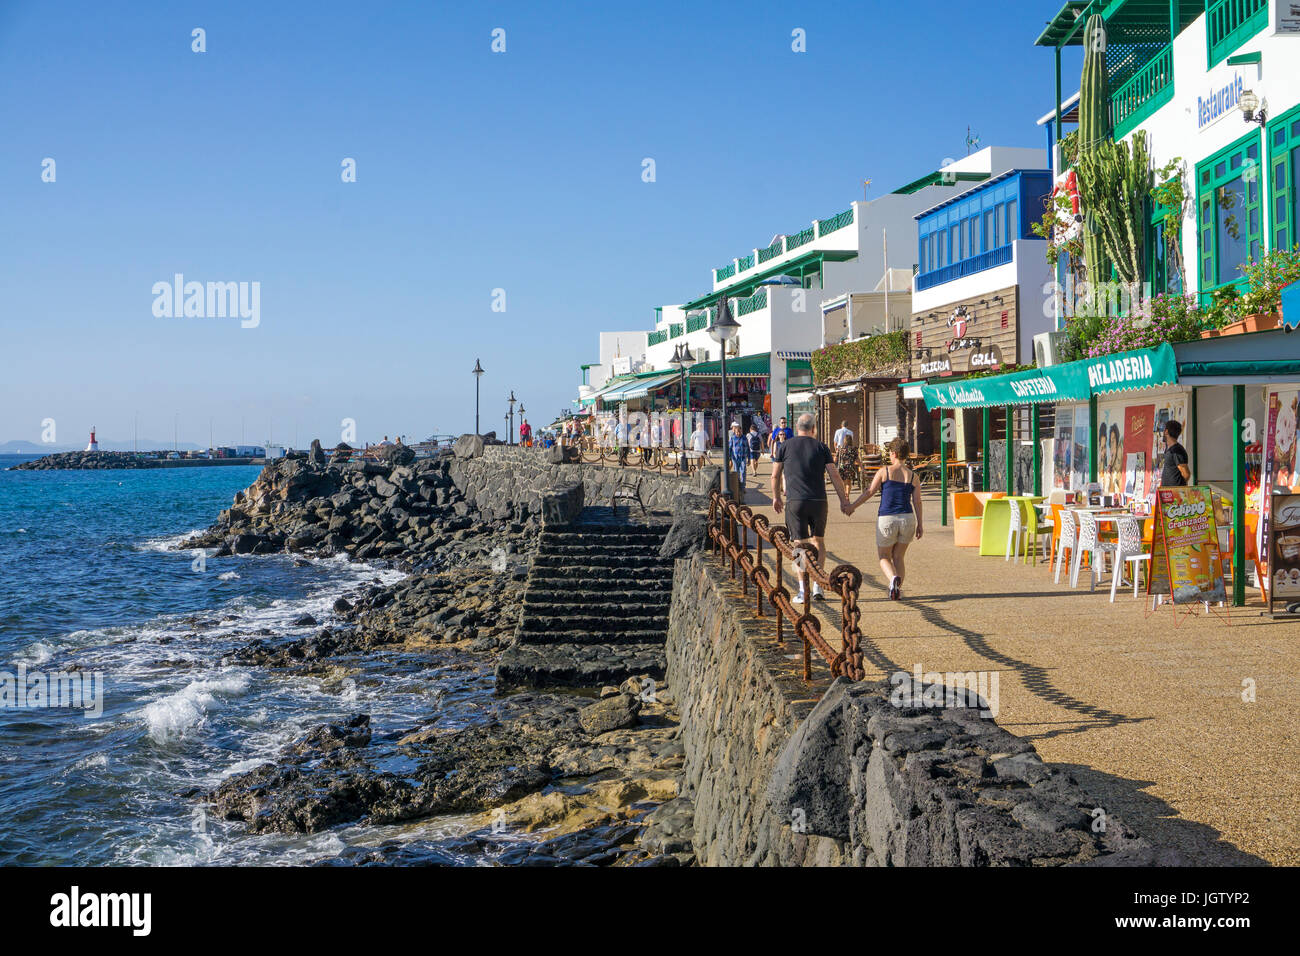 Promenade avec restaurants et magasins à Playa Blanca, Lanzarote, îles Canaries, Espagne, Europe Banque D'Images